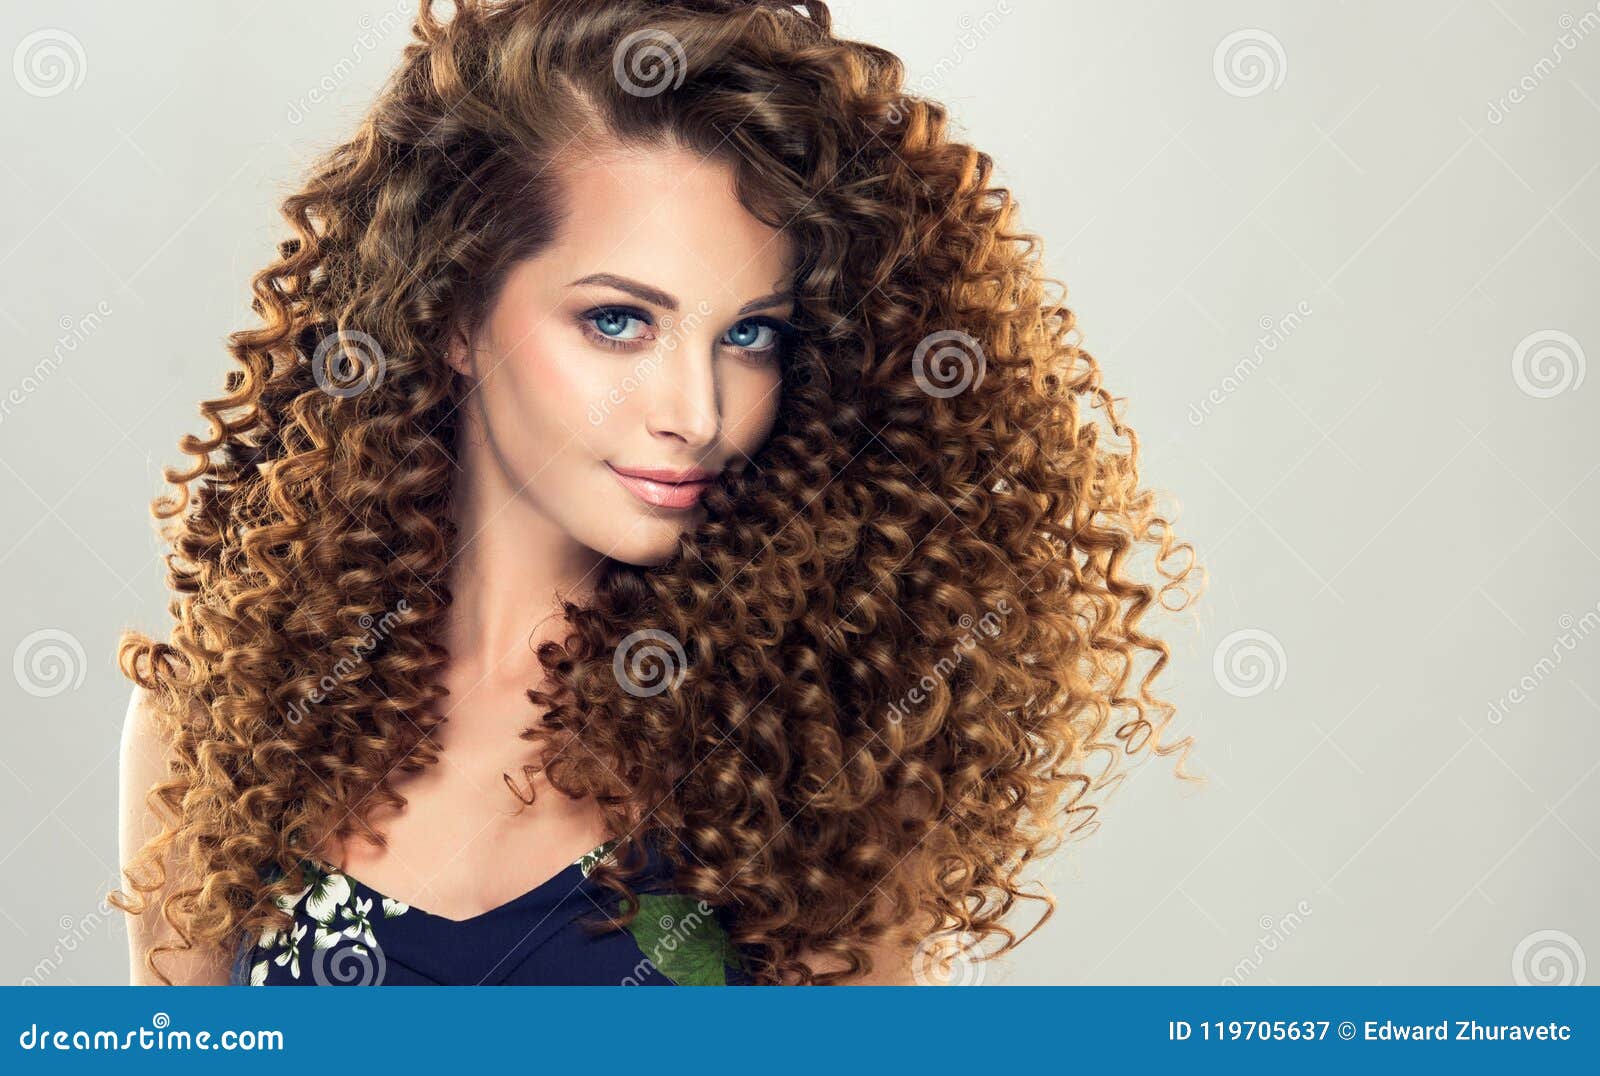 Graag gedaan horizon Vlieger Jonge, Bruine Haired Vrouw Met Dichte, Elastische Krullen in Een Kapsel  Stock Afbeelding - Image of kleuring, vers: 119705637